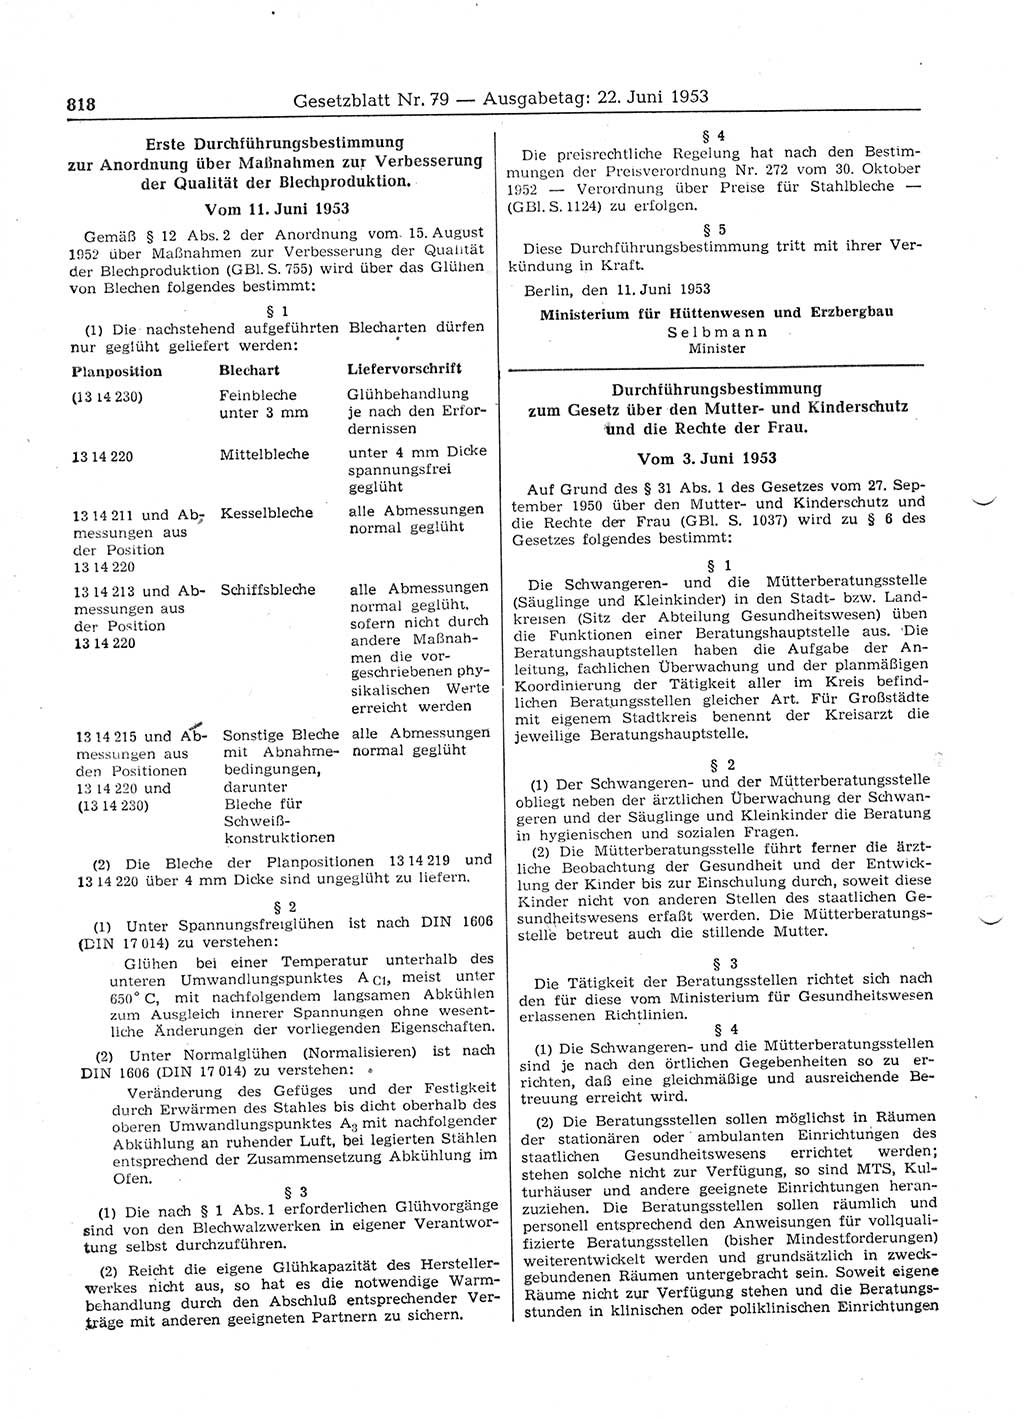 Gesetzblatt (GBl.) der Deutschen Demokratischen Republik (DDR) 1953, Seite 818 (GBl. DDR 1953, S. 818)